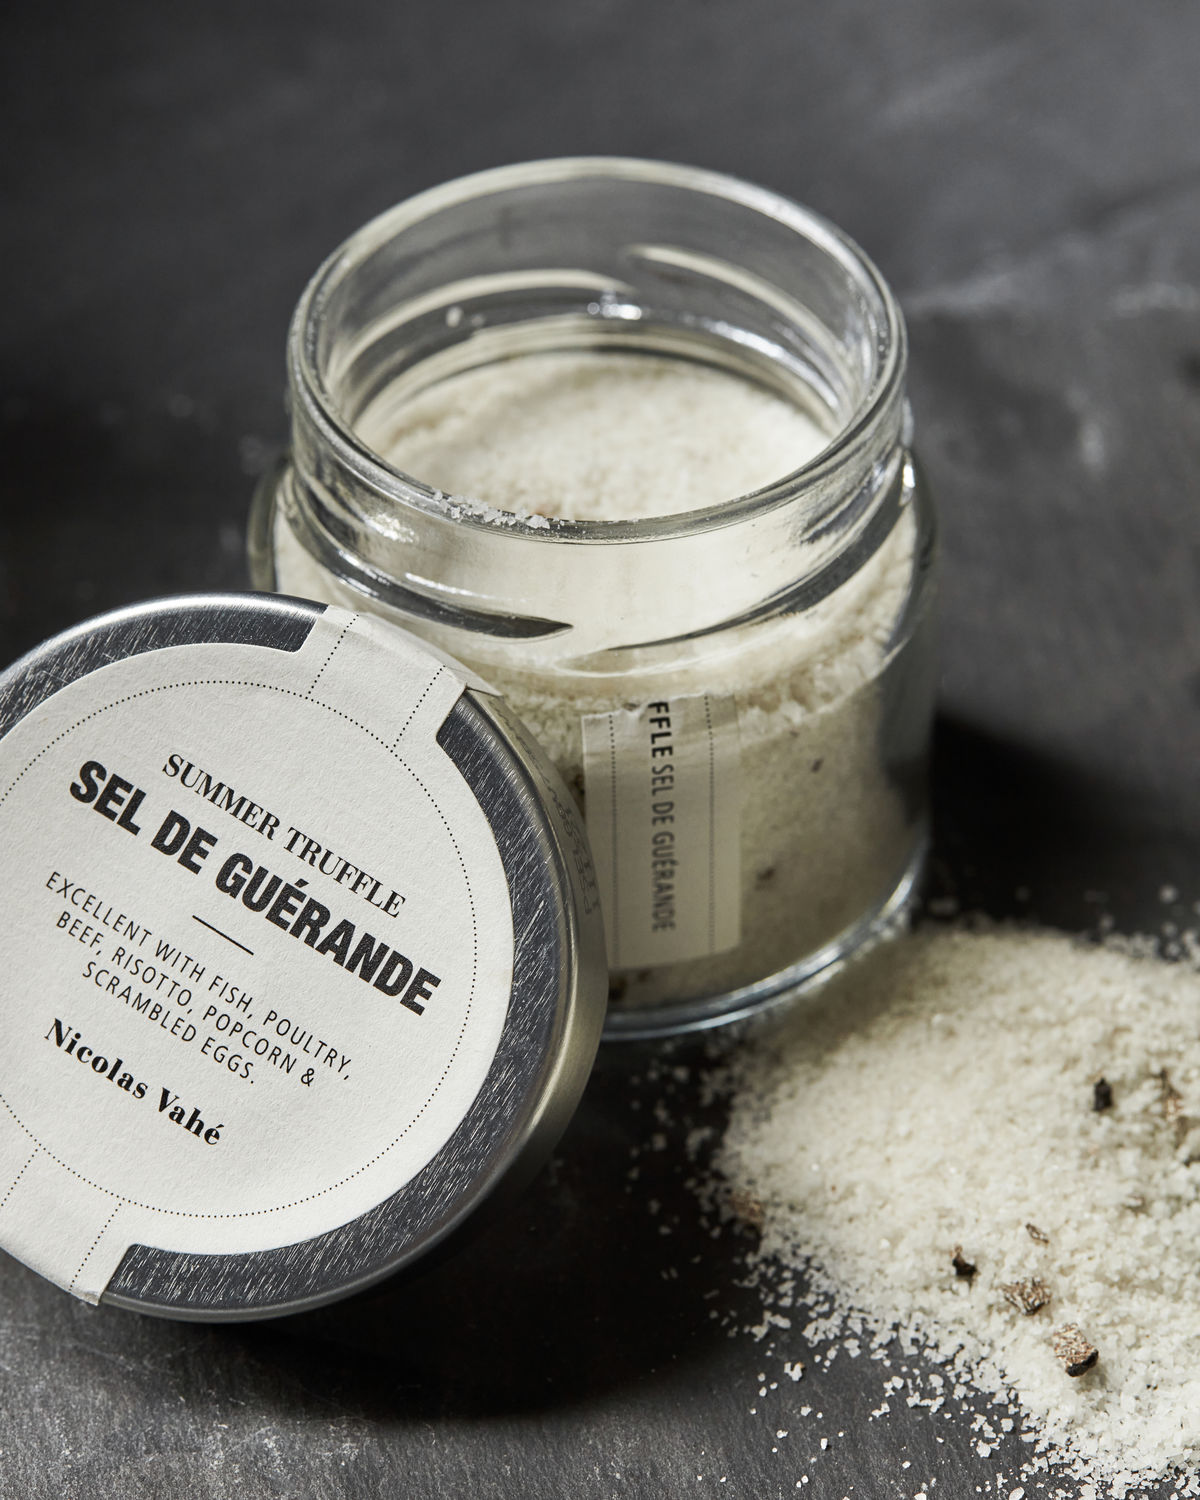 Salt, Sel De Guérande w. Summer Truffle, 75 g.